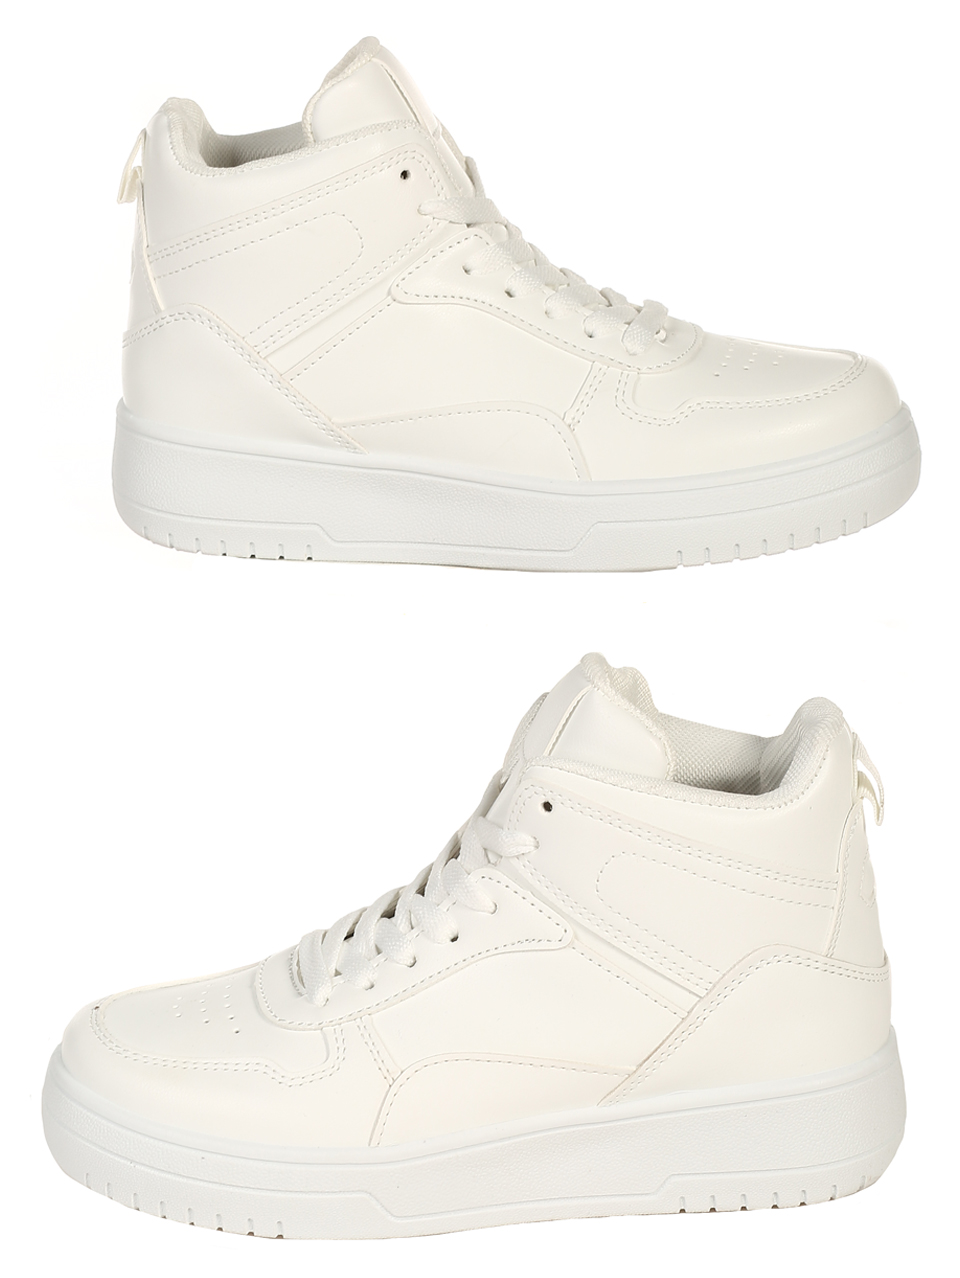 Ежедневни юношески обувки в бяло 14U-22539 white